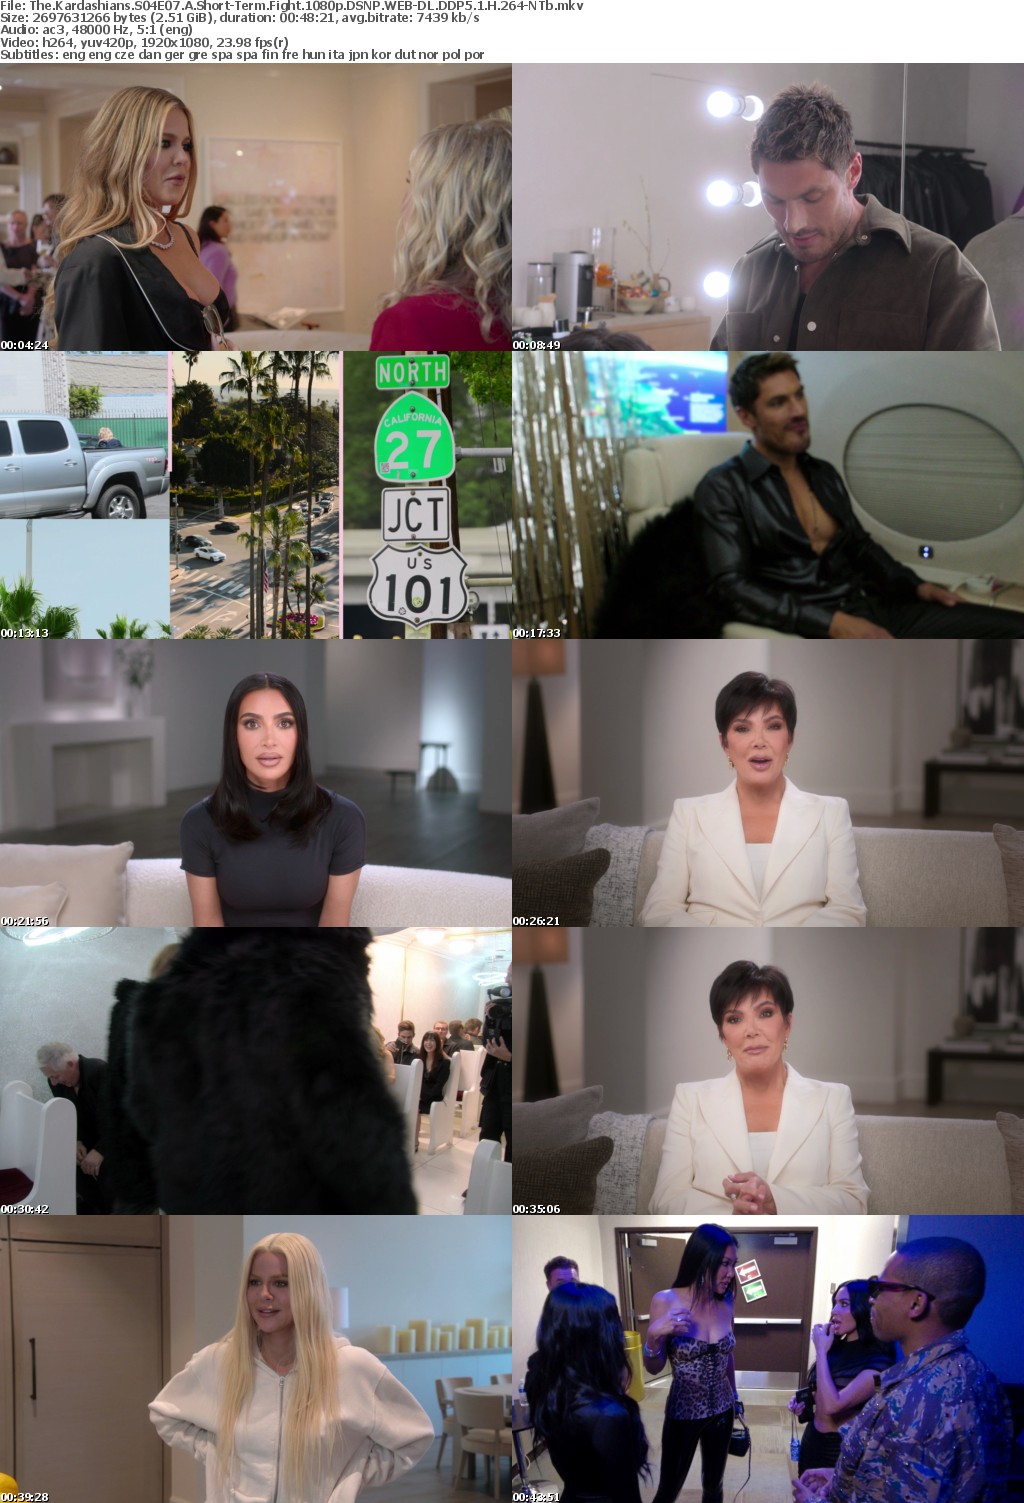 The Kardashians S04E07 A Short-Term Fight 1080p DSNP WEB-DL DDP5 1 H 264-NTb